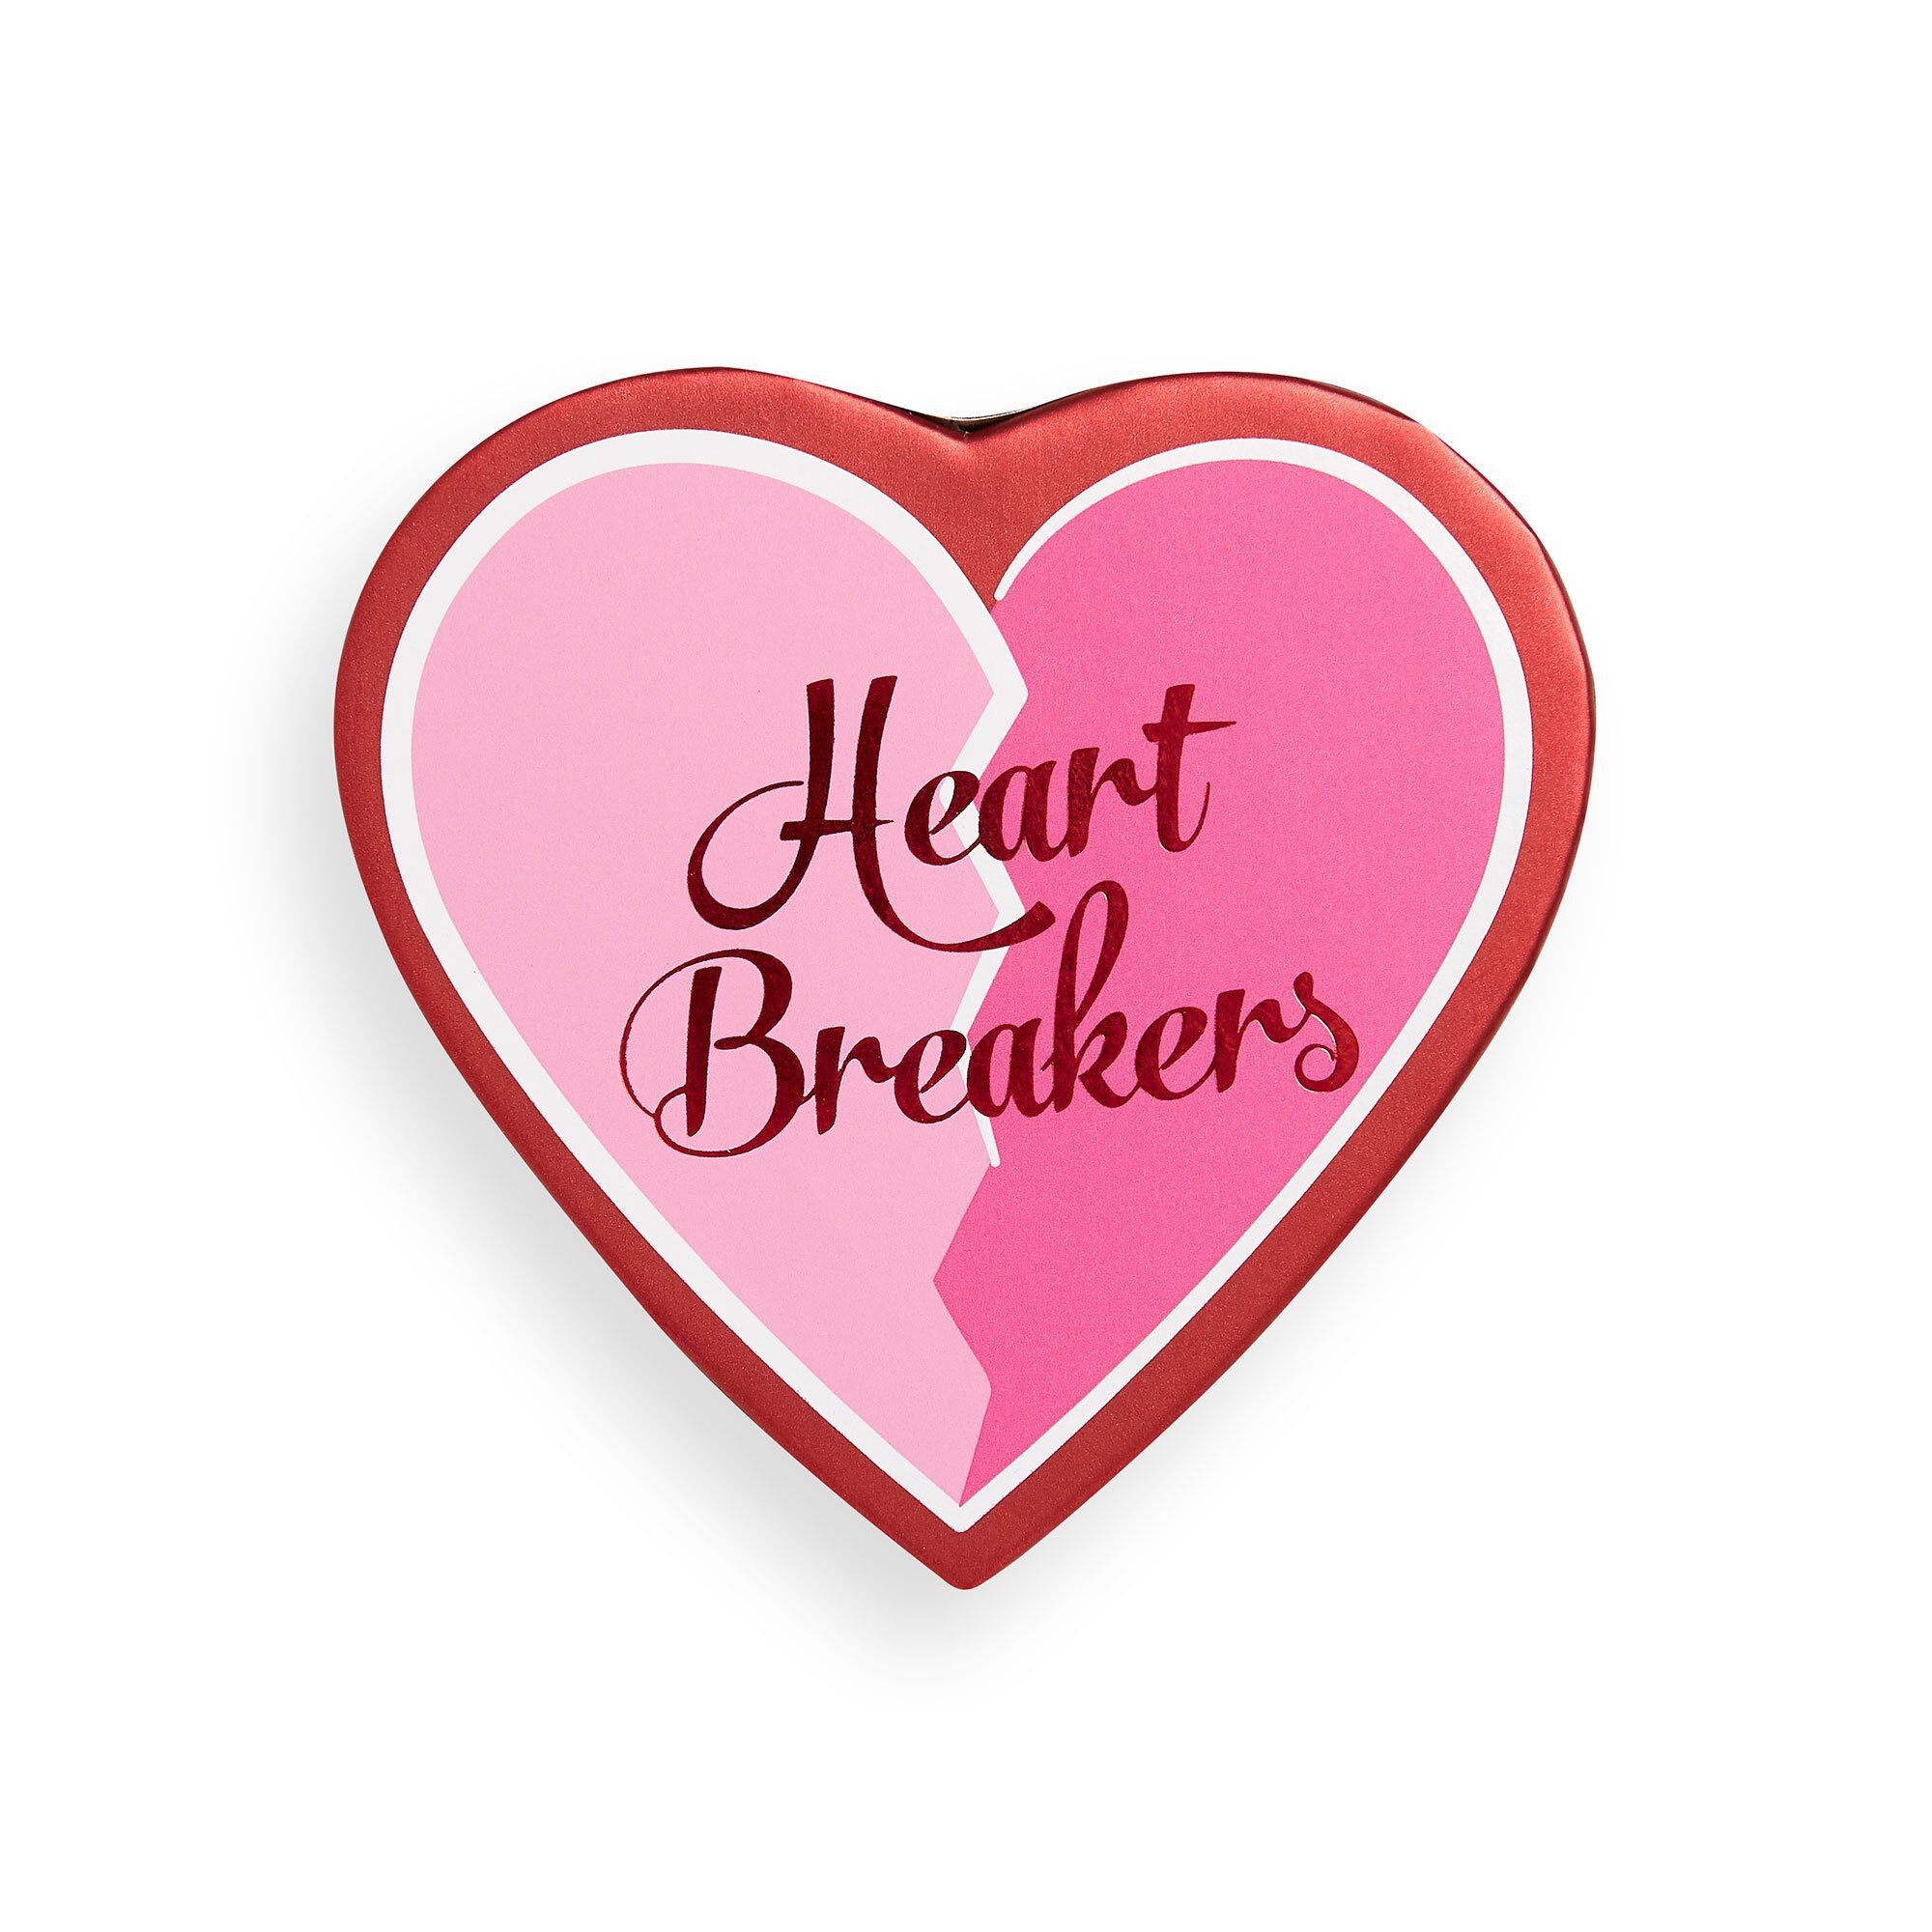 Heartbreakers Blush